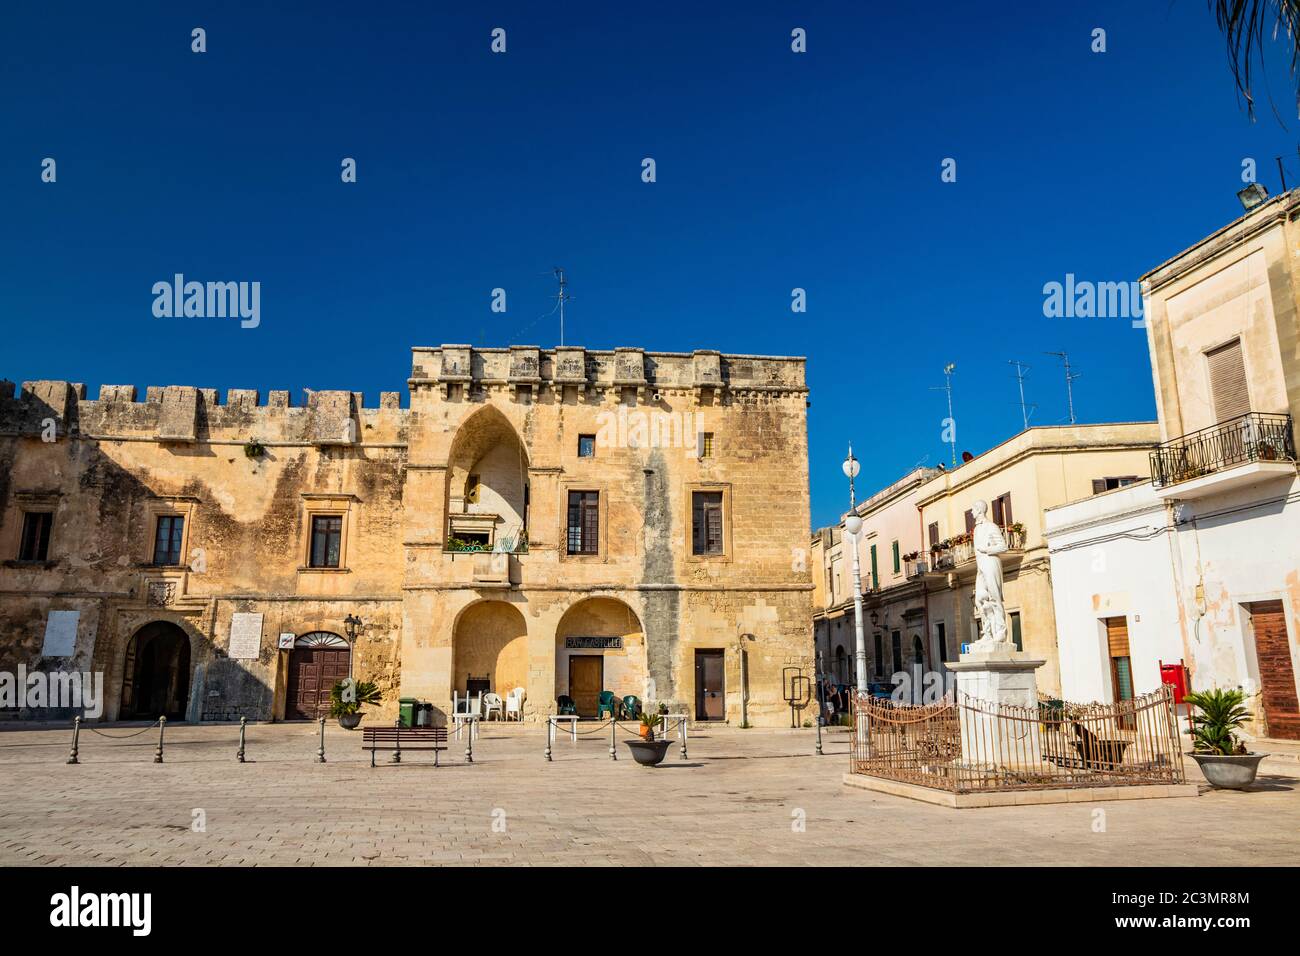 22 août 2019 - Cavallino, Lecce, Puglia, Salento, Italie - le château, ou palais ducal, du Castromediano Lymburgh, avec des remparts et des bastions. Banque D'Images